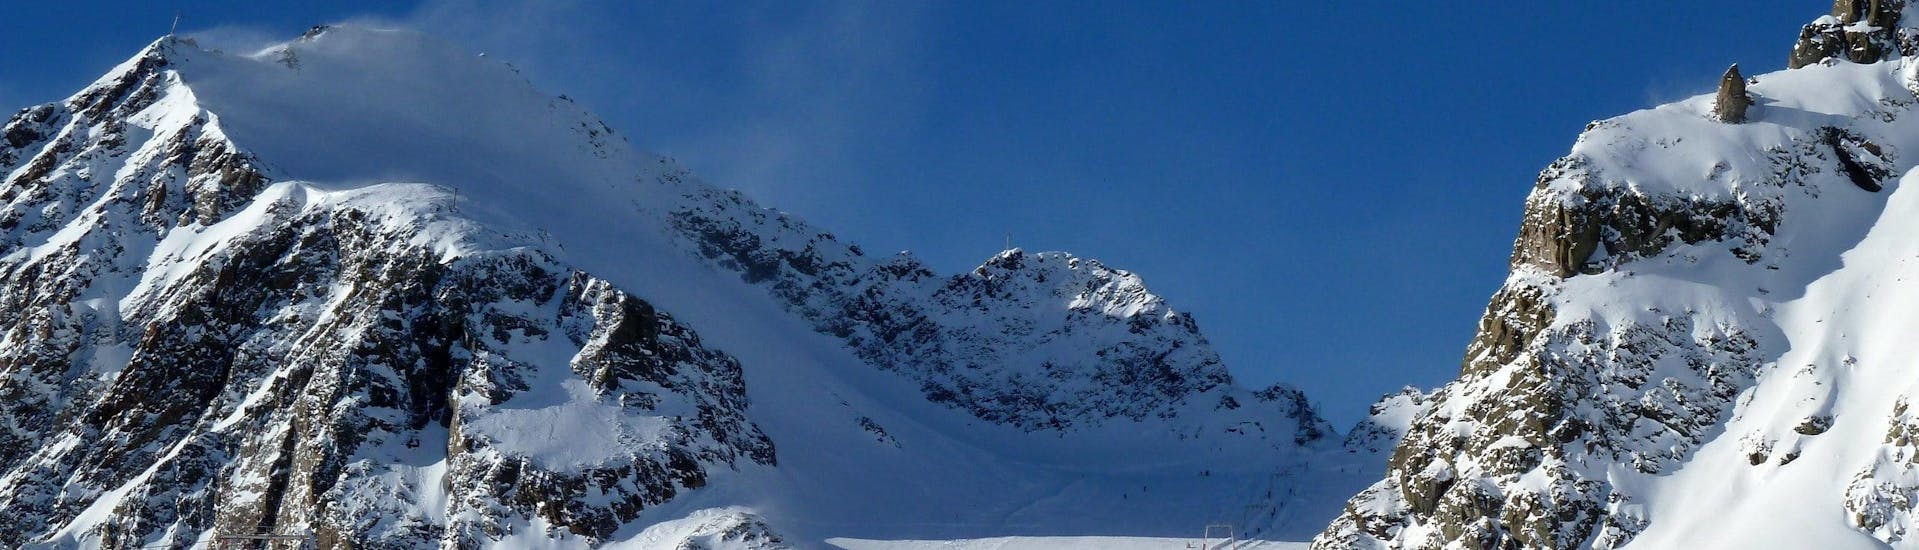 Ausblick auf die sonnige Berglandschaft beim Skifahren lernen mit den Skischulen am Pitztaler Gletscher.